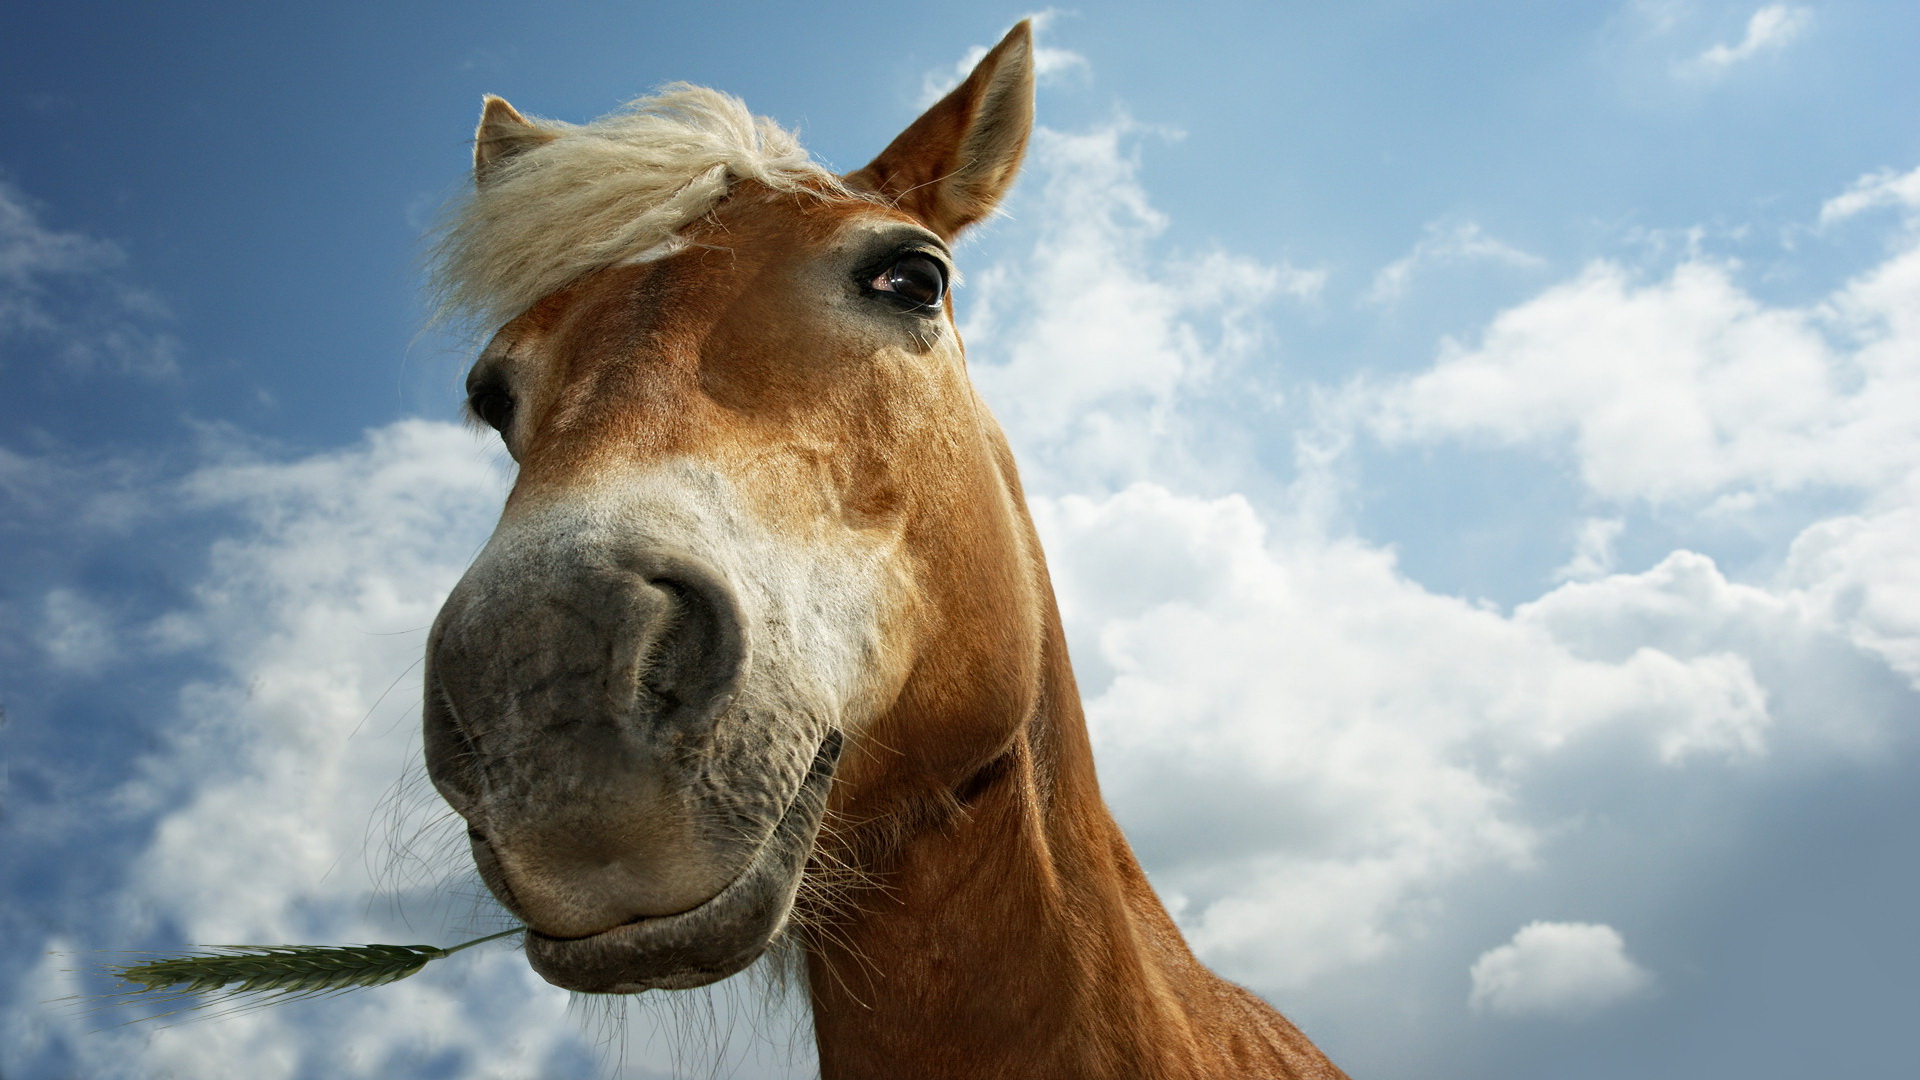 Baixe gratuitamente a imagem Animais, Cavalo na área de trabalho do seu PC